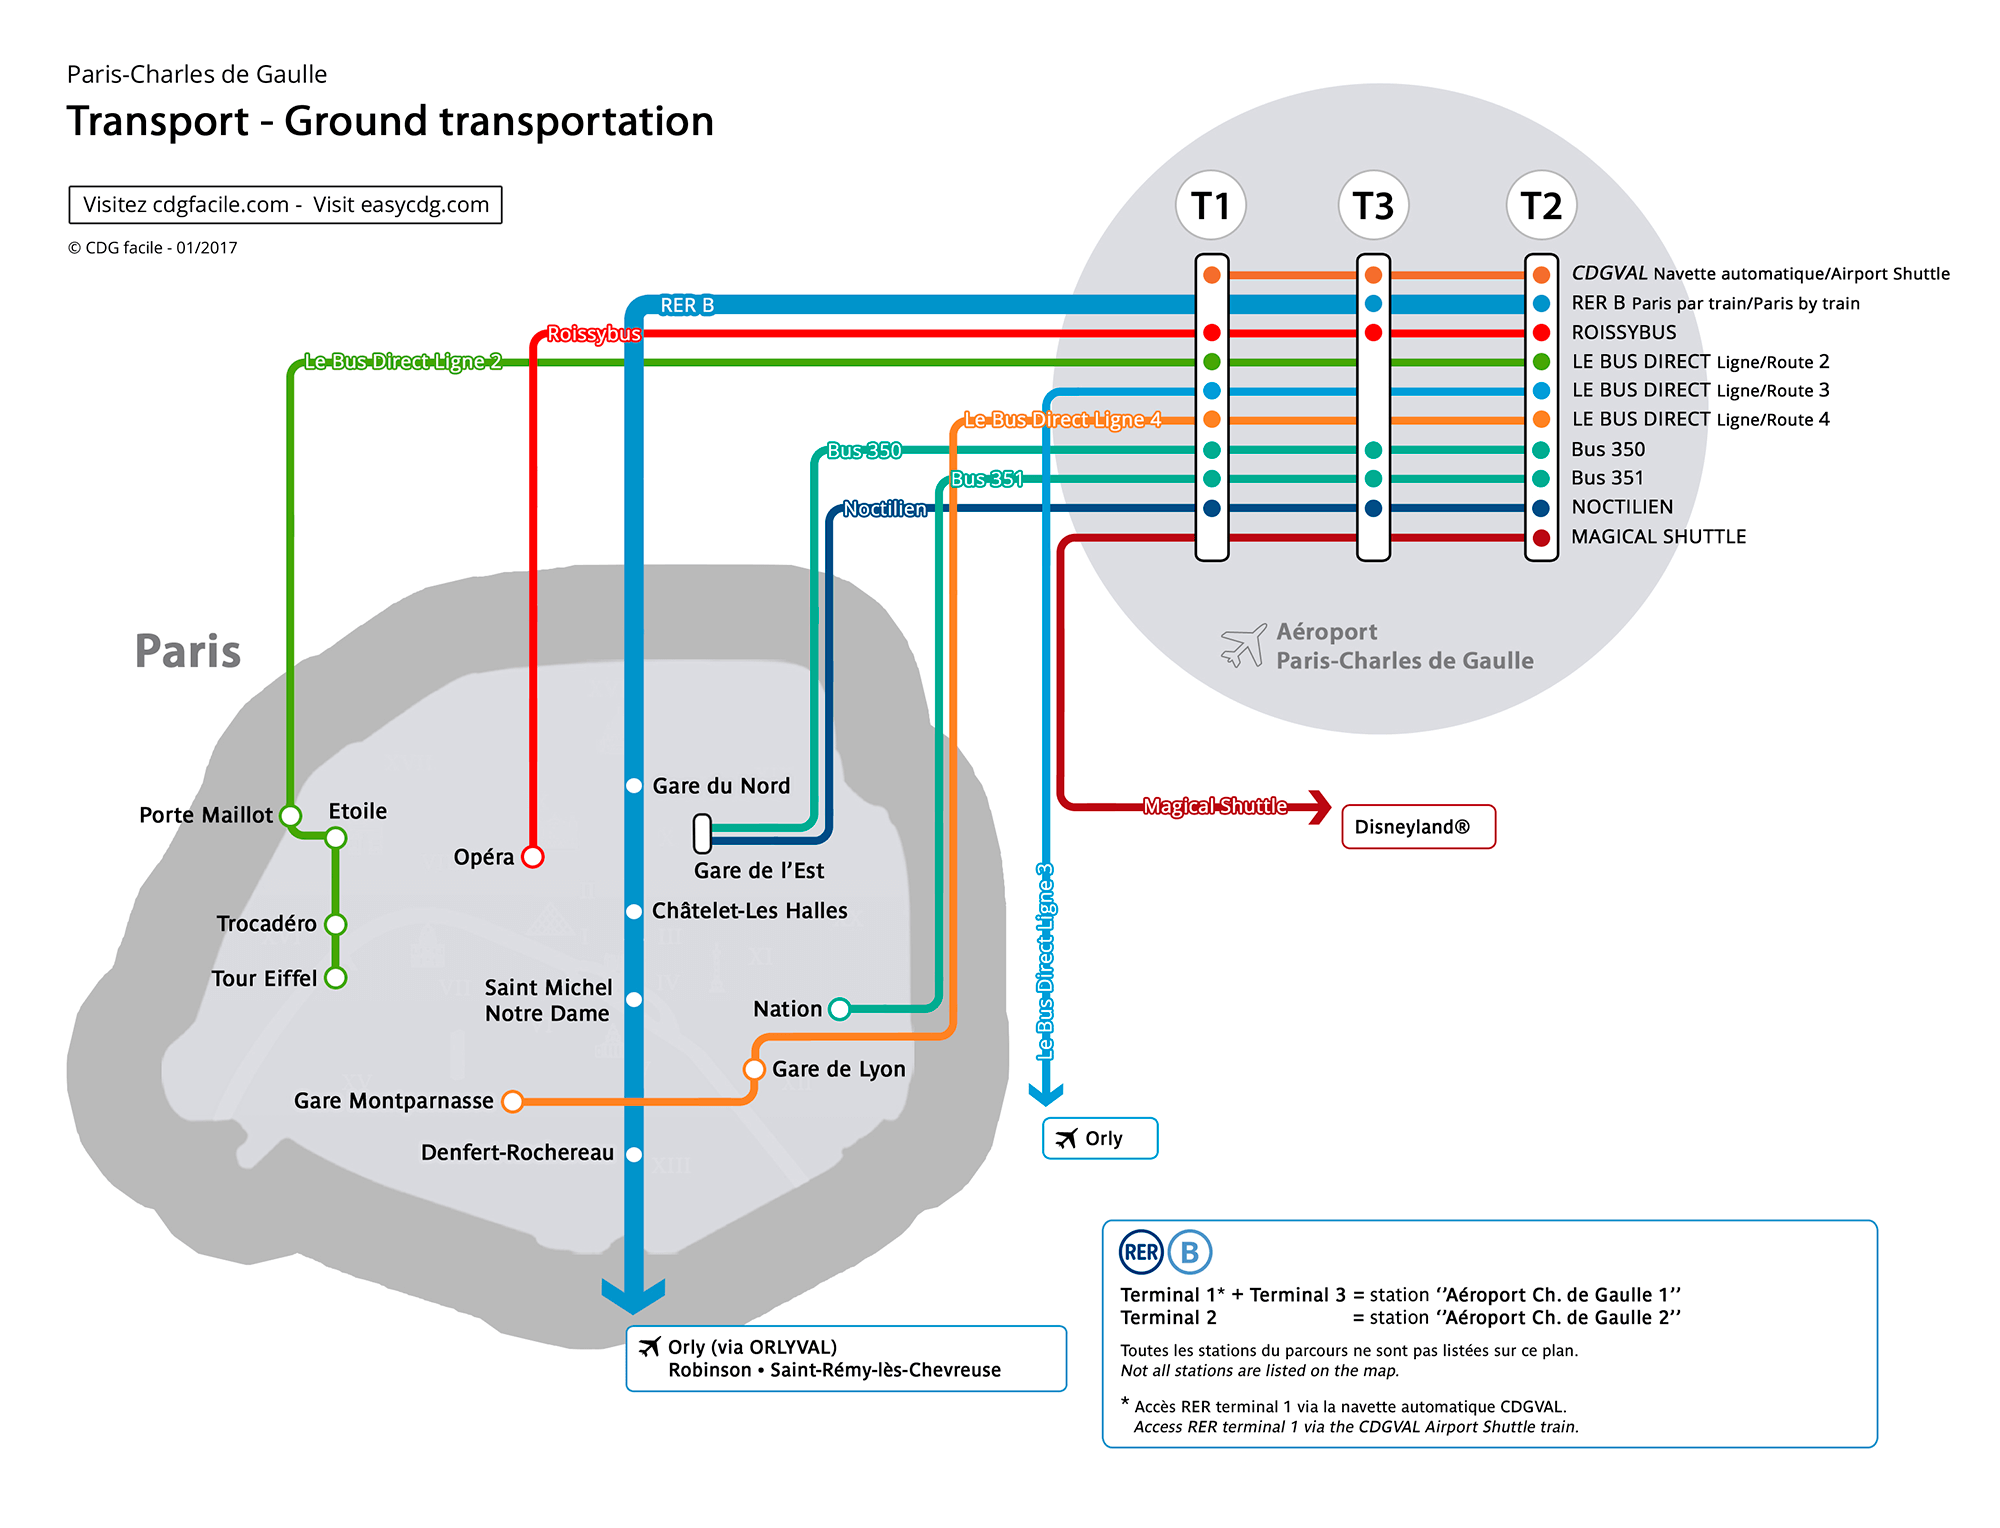 Схема автобусных маршрутов от Шарль-де-Голля до Парижа. Все автобусы отходят от терминала 2. Некоторые останавливаются в терминалах 1 и 3. Источник: сайт аэропорта Шарль-де-Голль